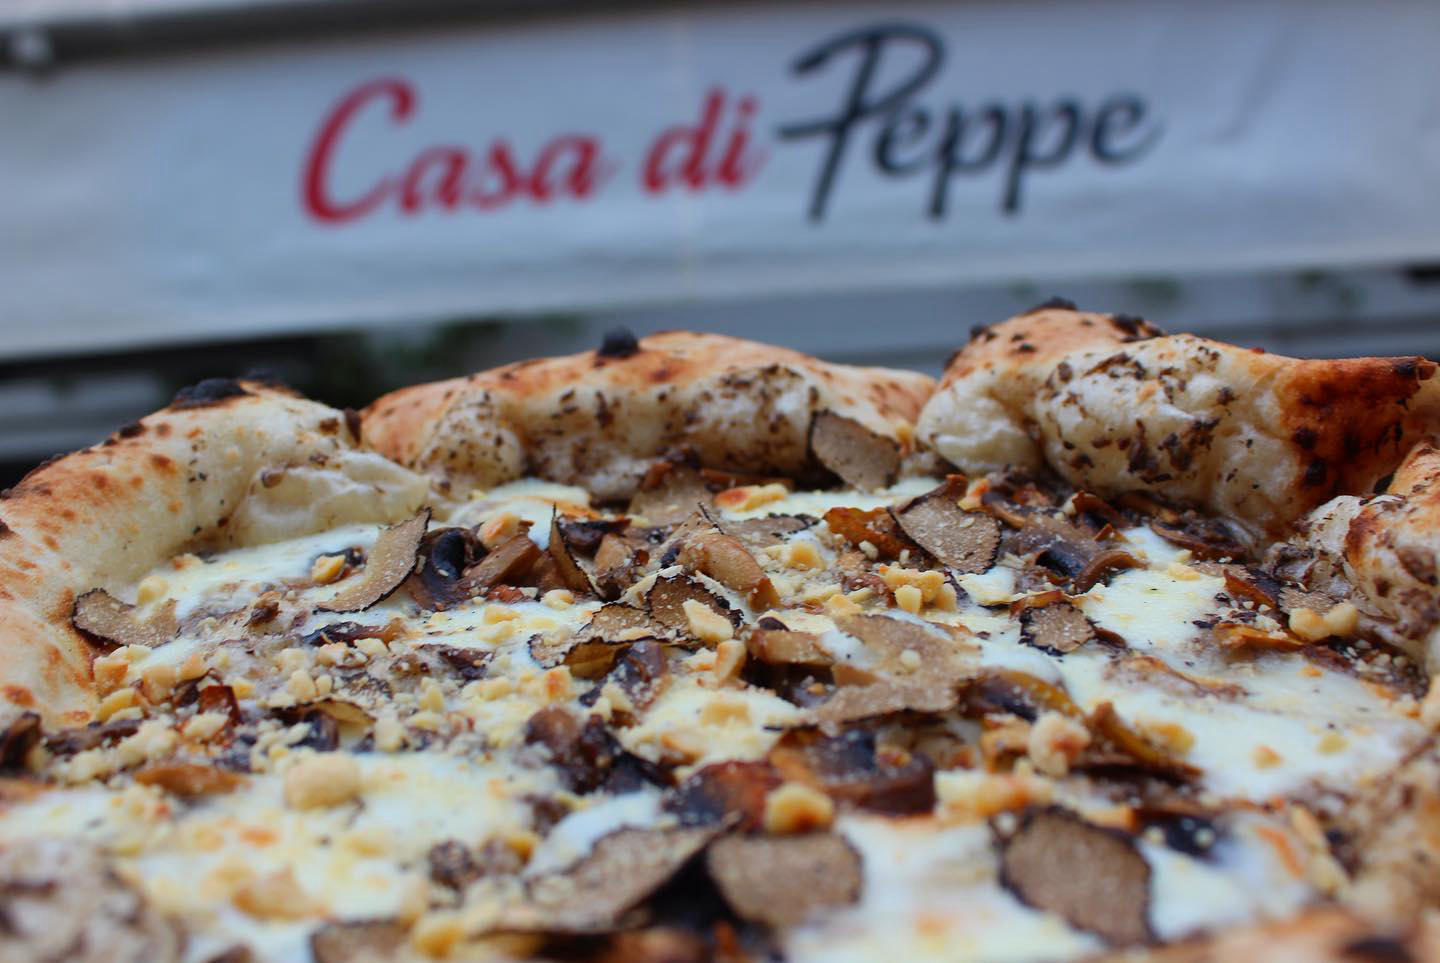 Peppe pizzeria napoletana - Casa Di Peppe notre restaurant du 5 eme arrondissement vous accueille 7